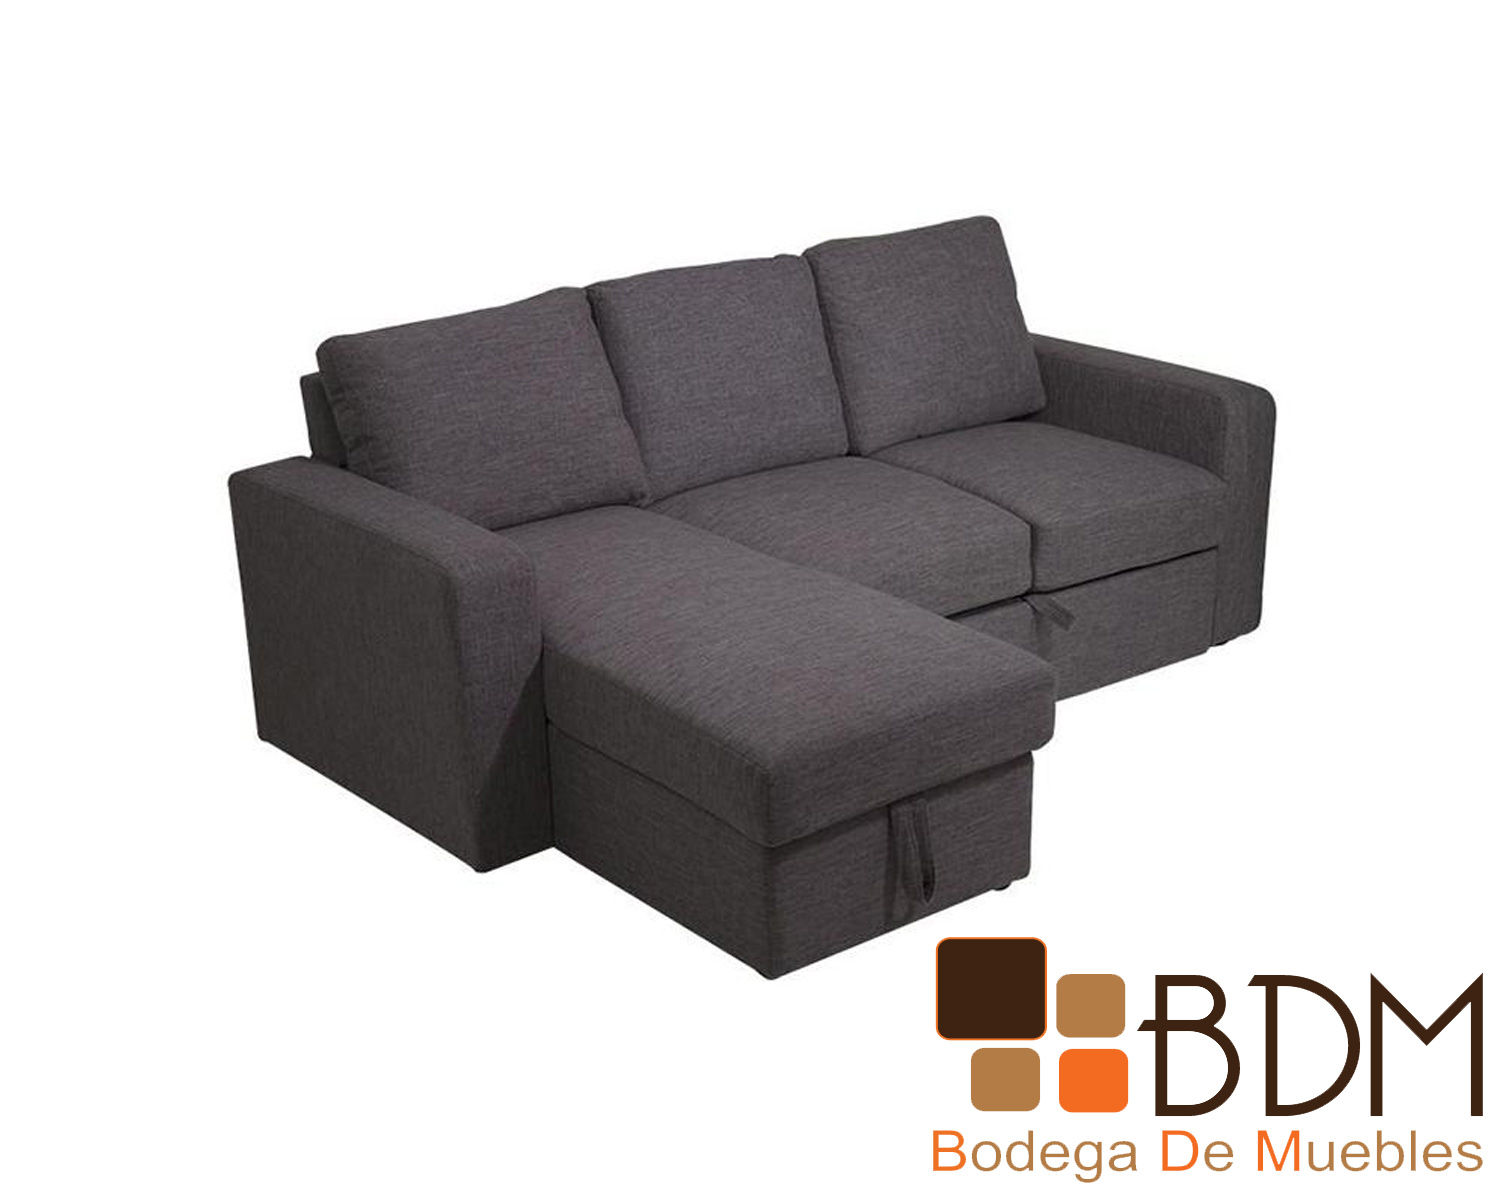 Sofa cama tapizado en tela color gris con baul